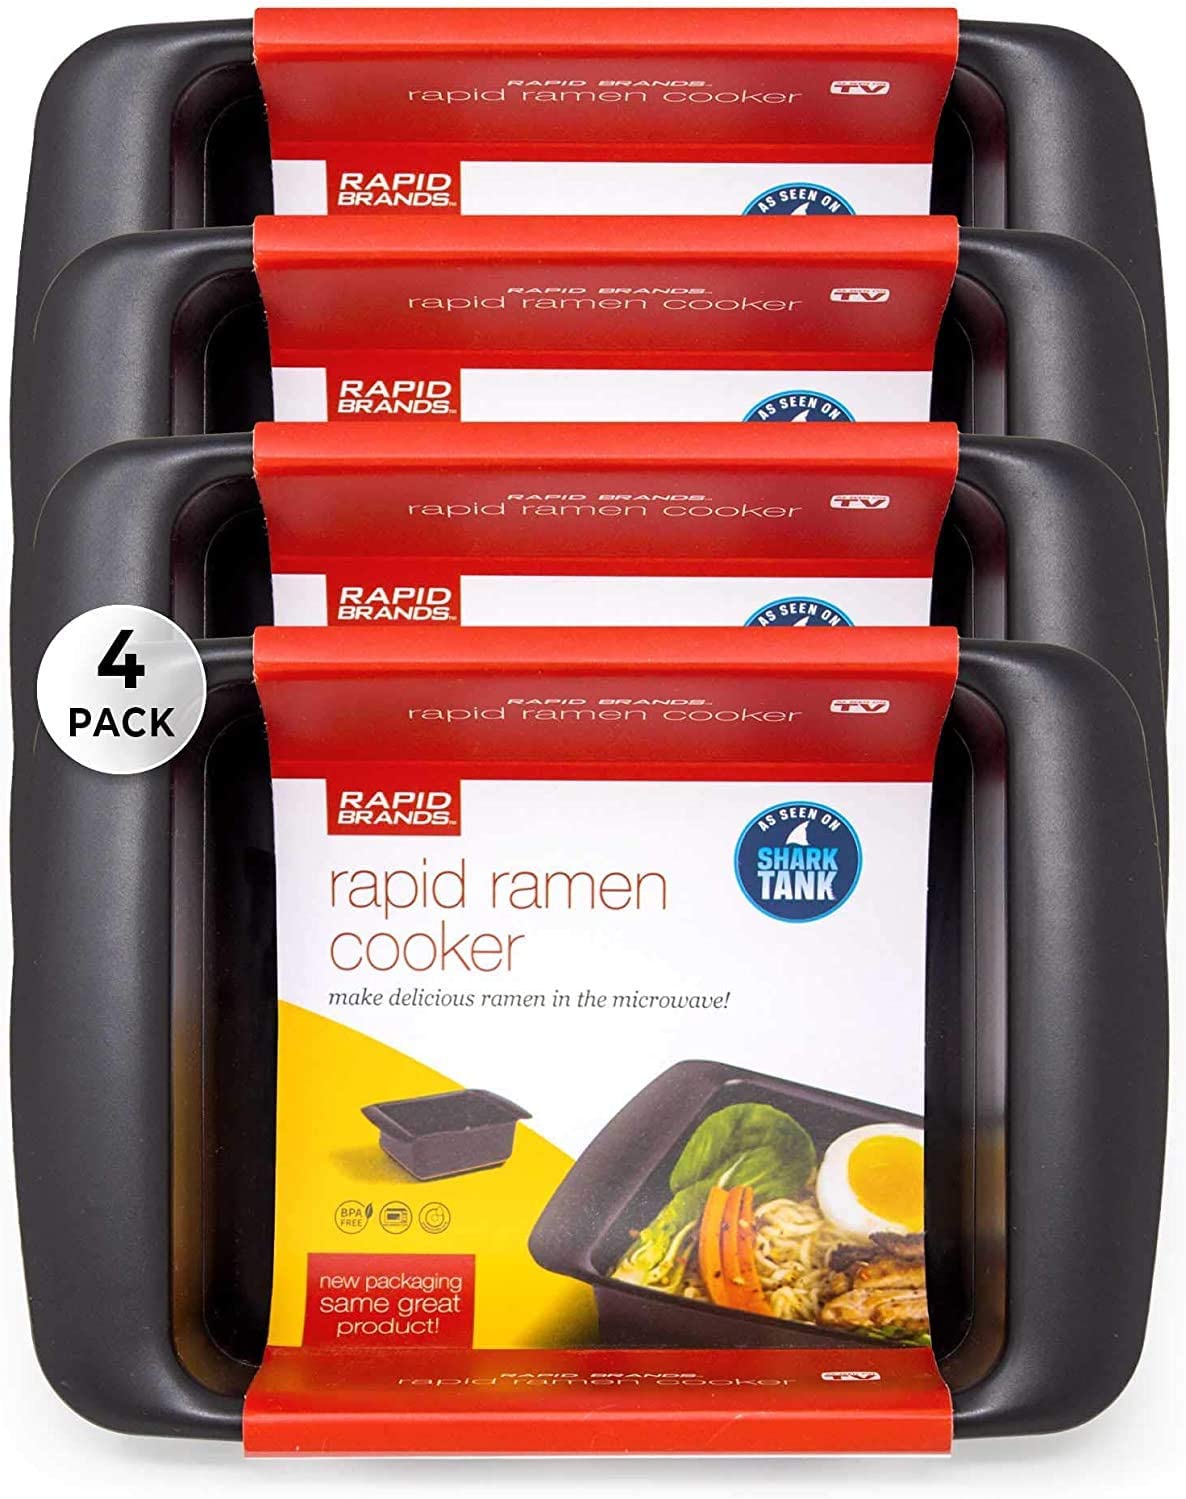 4 Piece Ramen Cooker Microwave Ramen Noodles in 3 Minutes - Rapid Brands